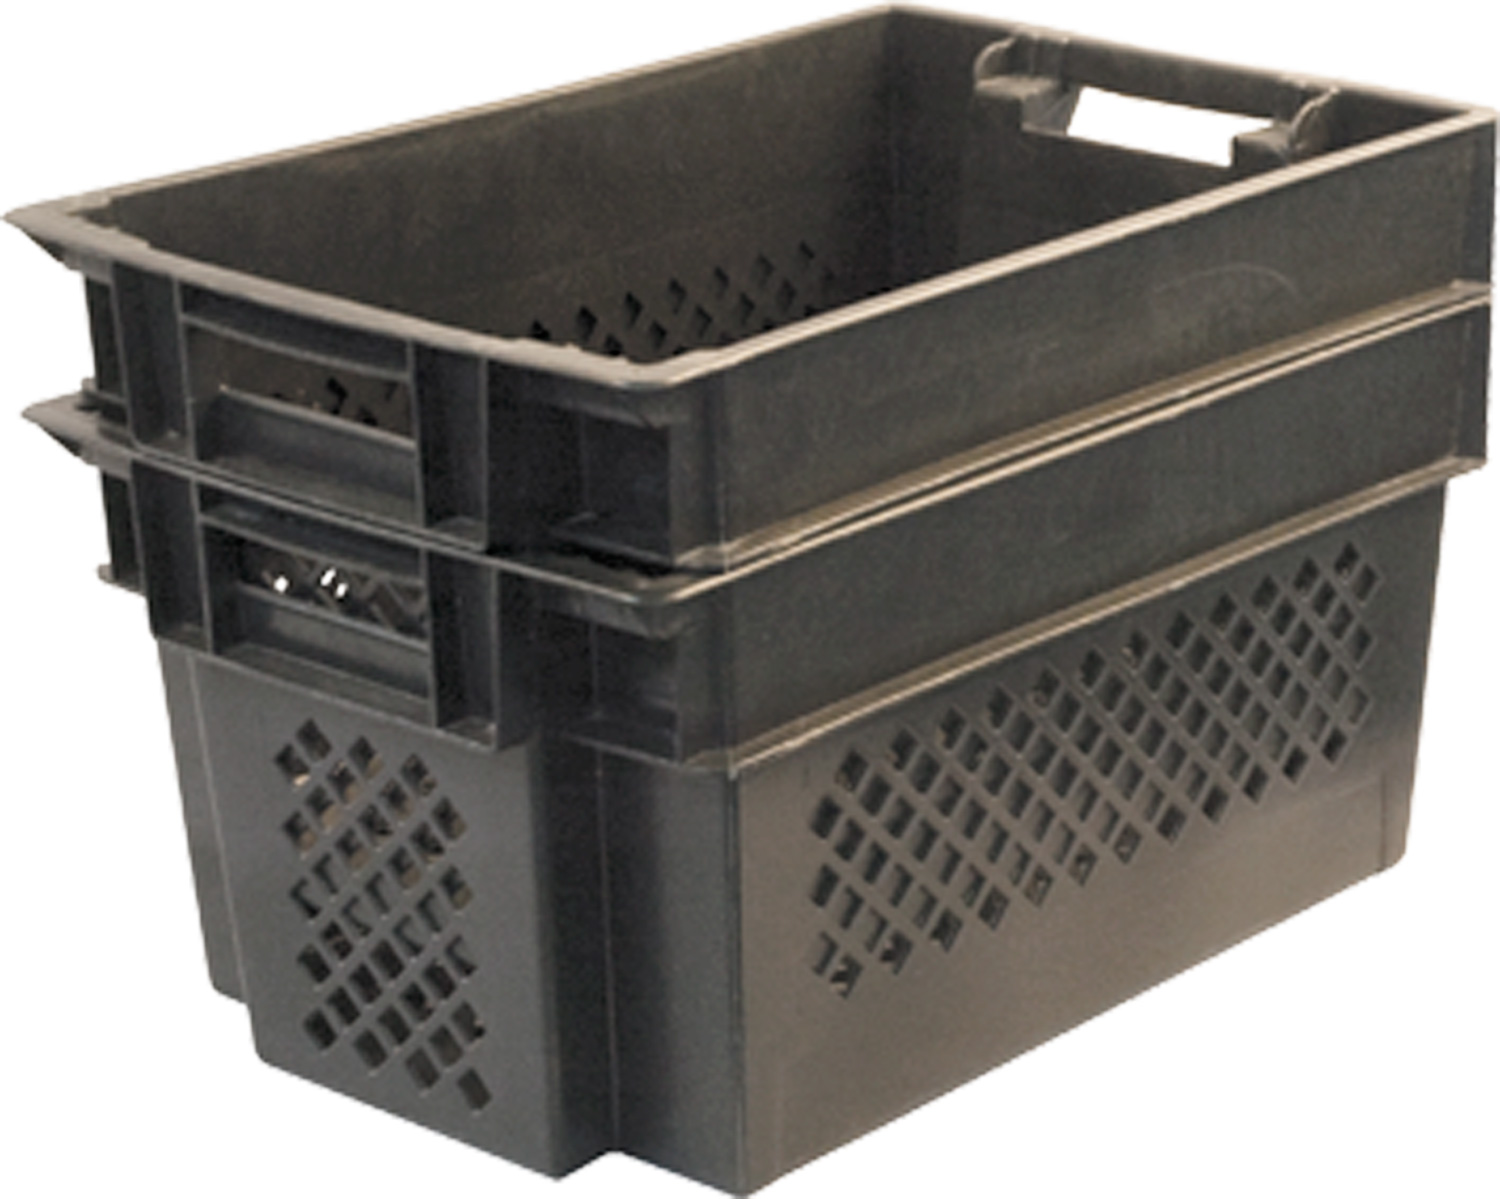 Ящик 108 пластиковый 600х400х300 мм для универсального применения в пищевой и непищевой отраслях промышленности перфорированный чёрный